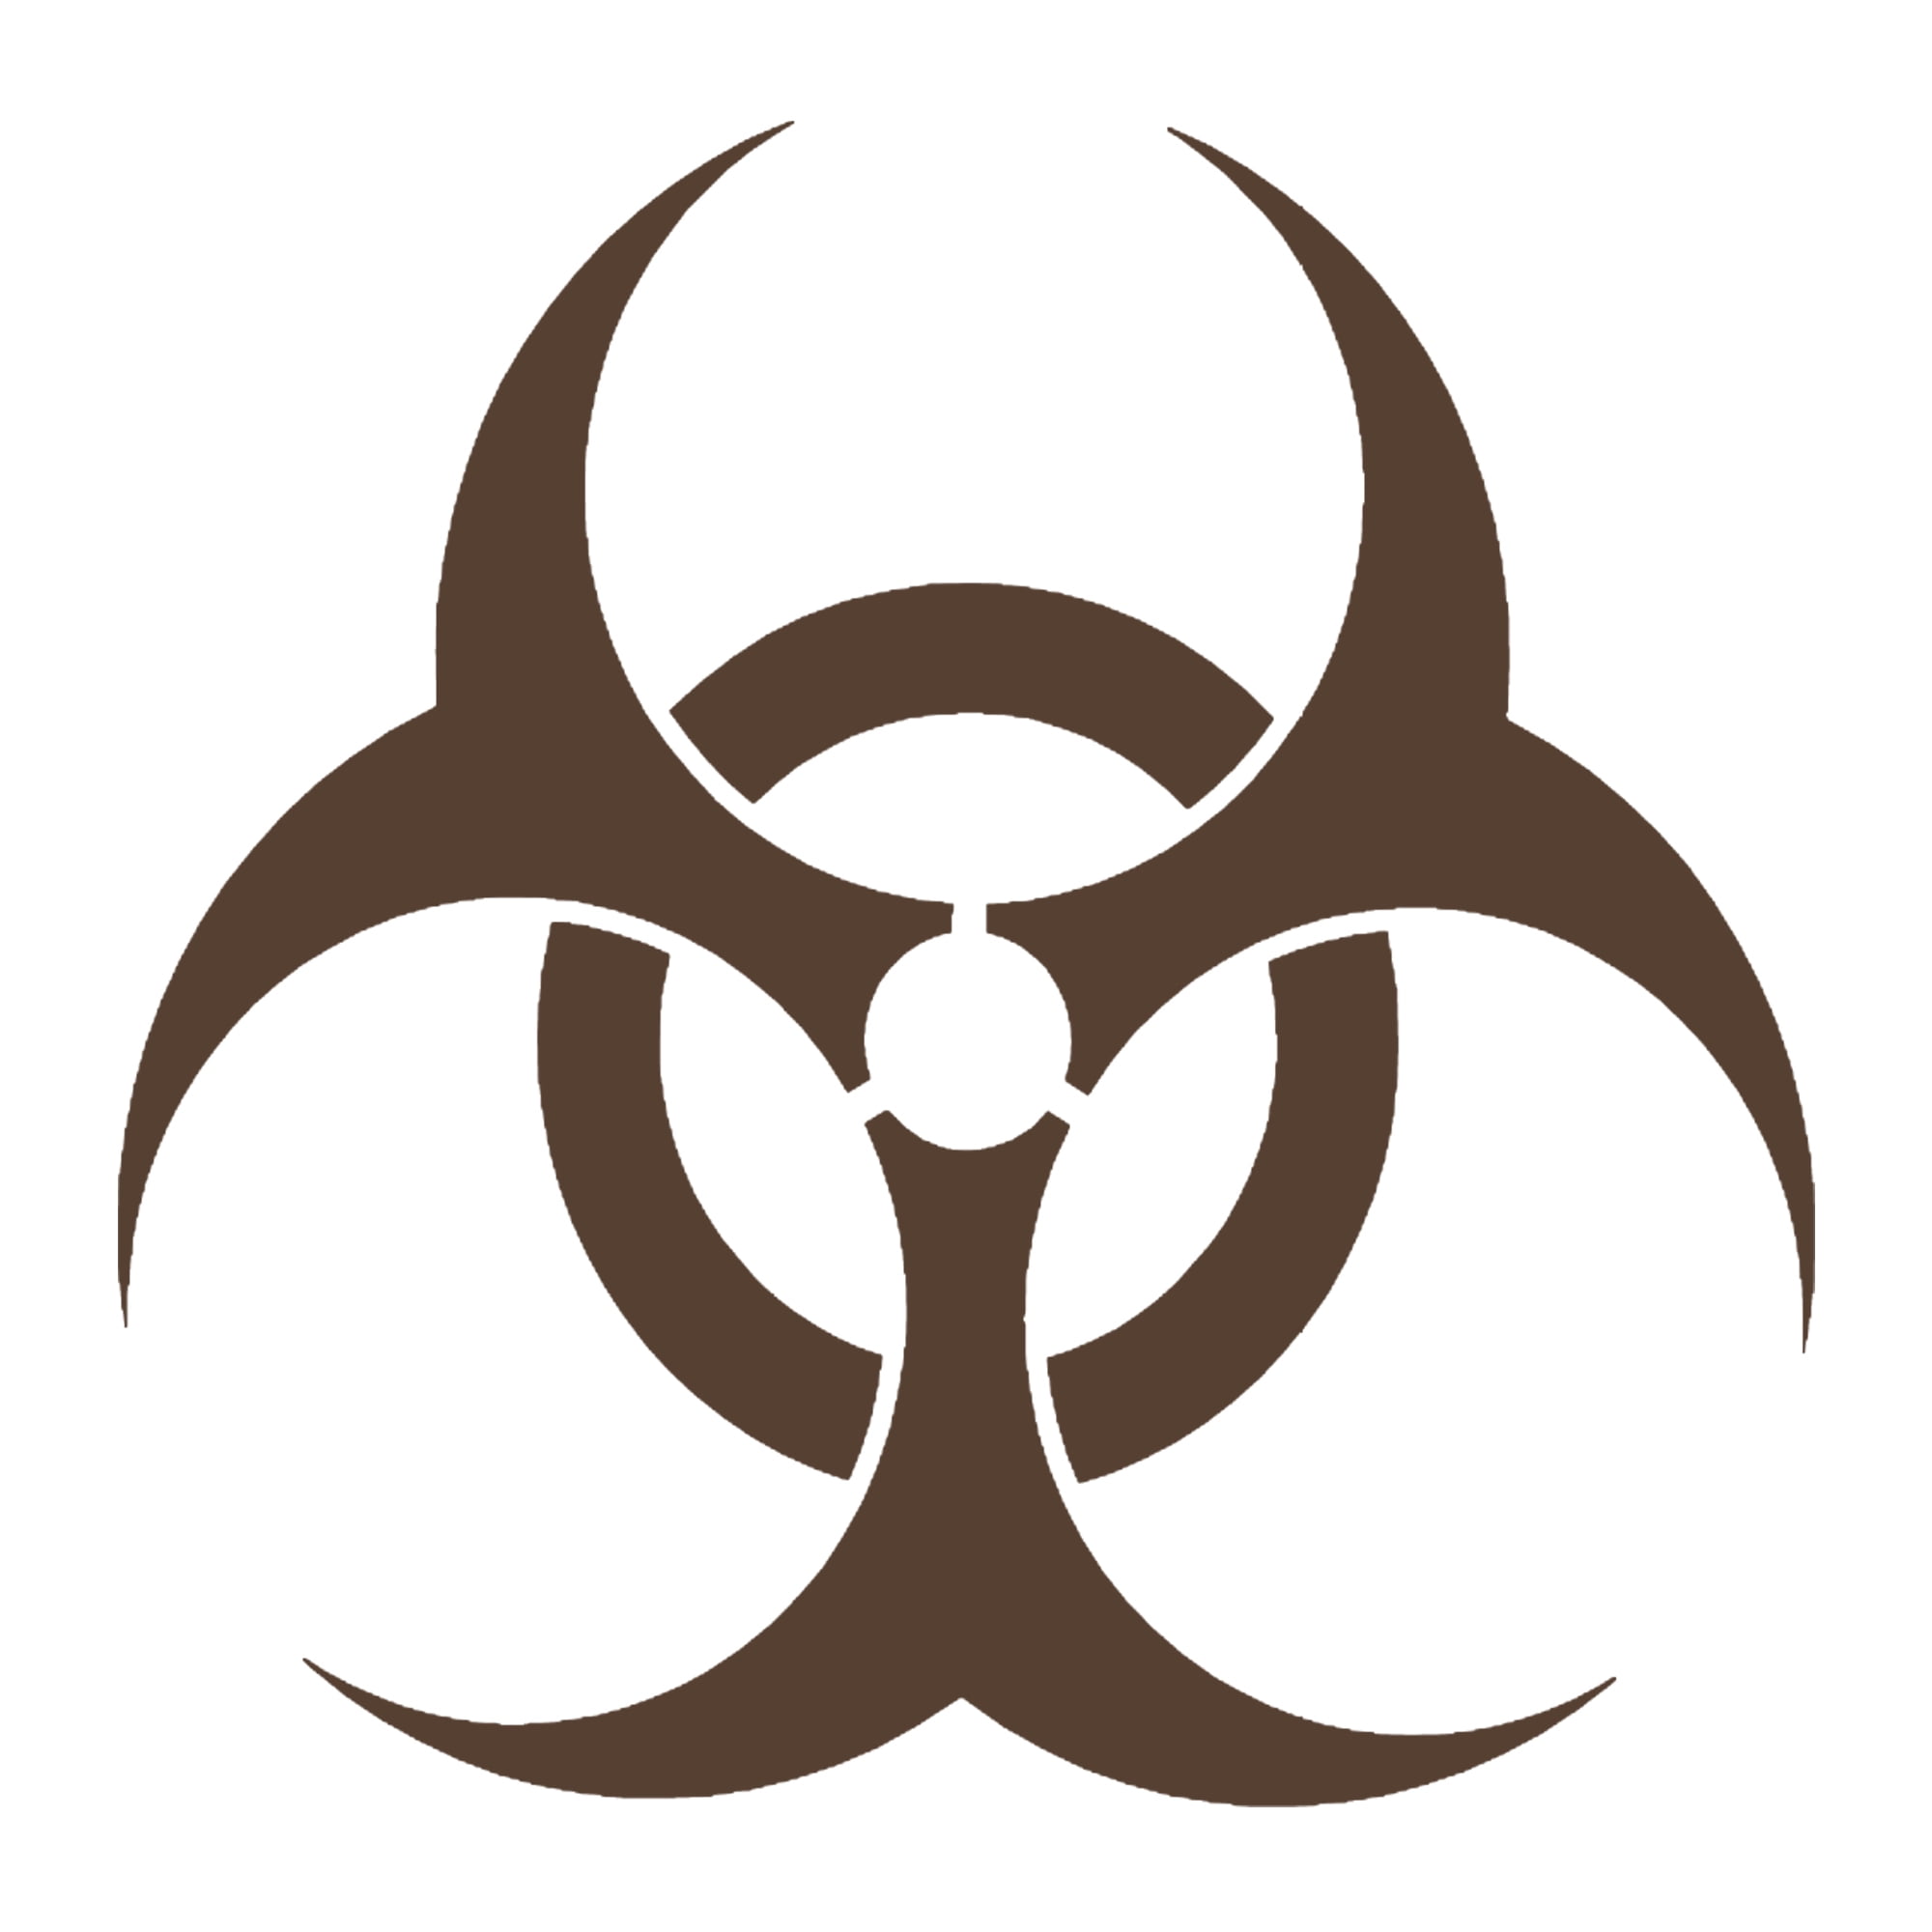 Radioactive Biohazard Zombie Skull Graphic Die Cut decal sticker Car Truck 6" 